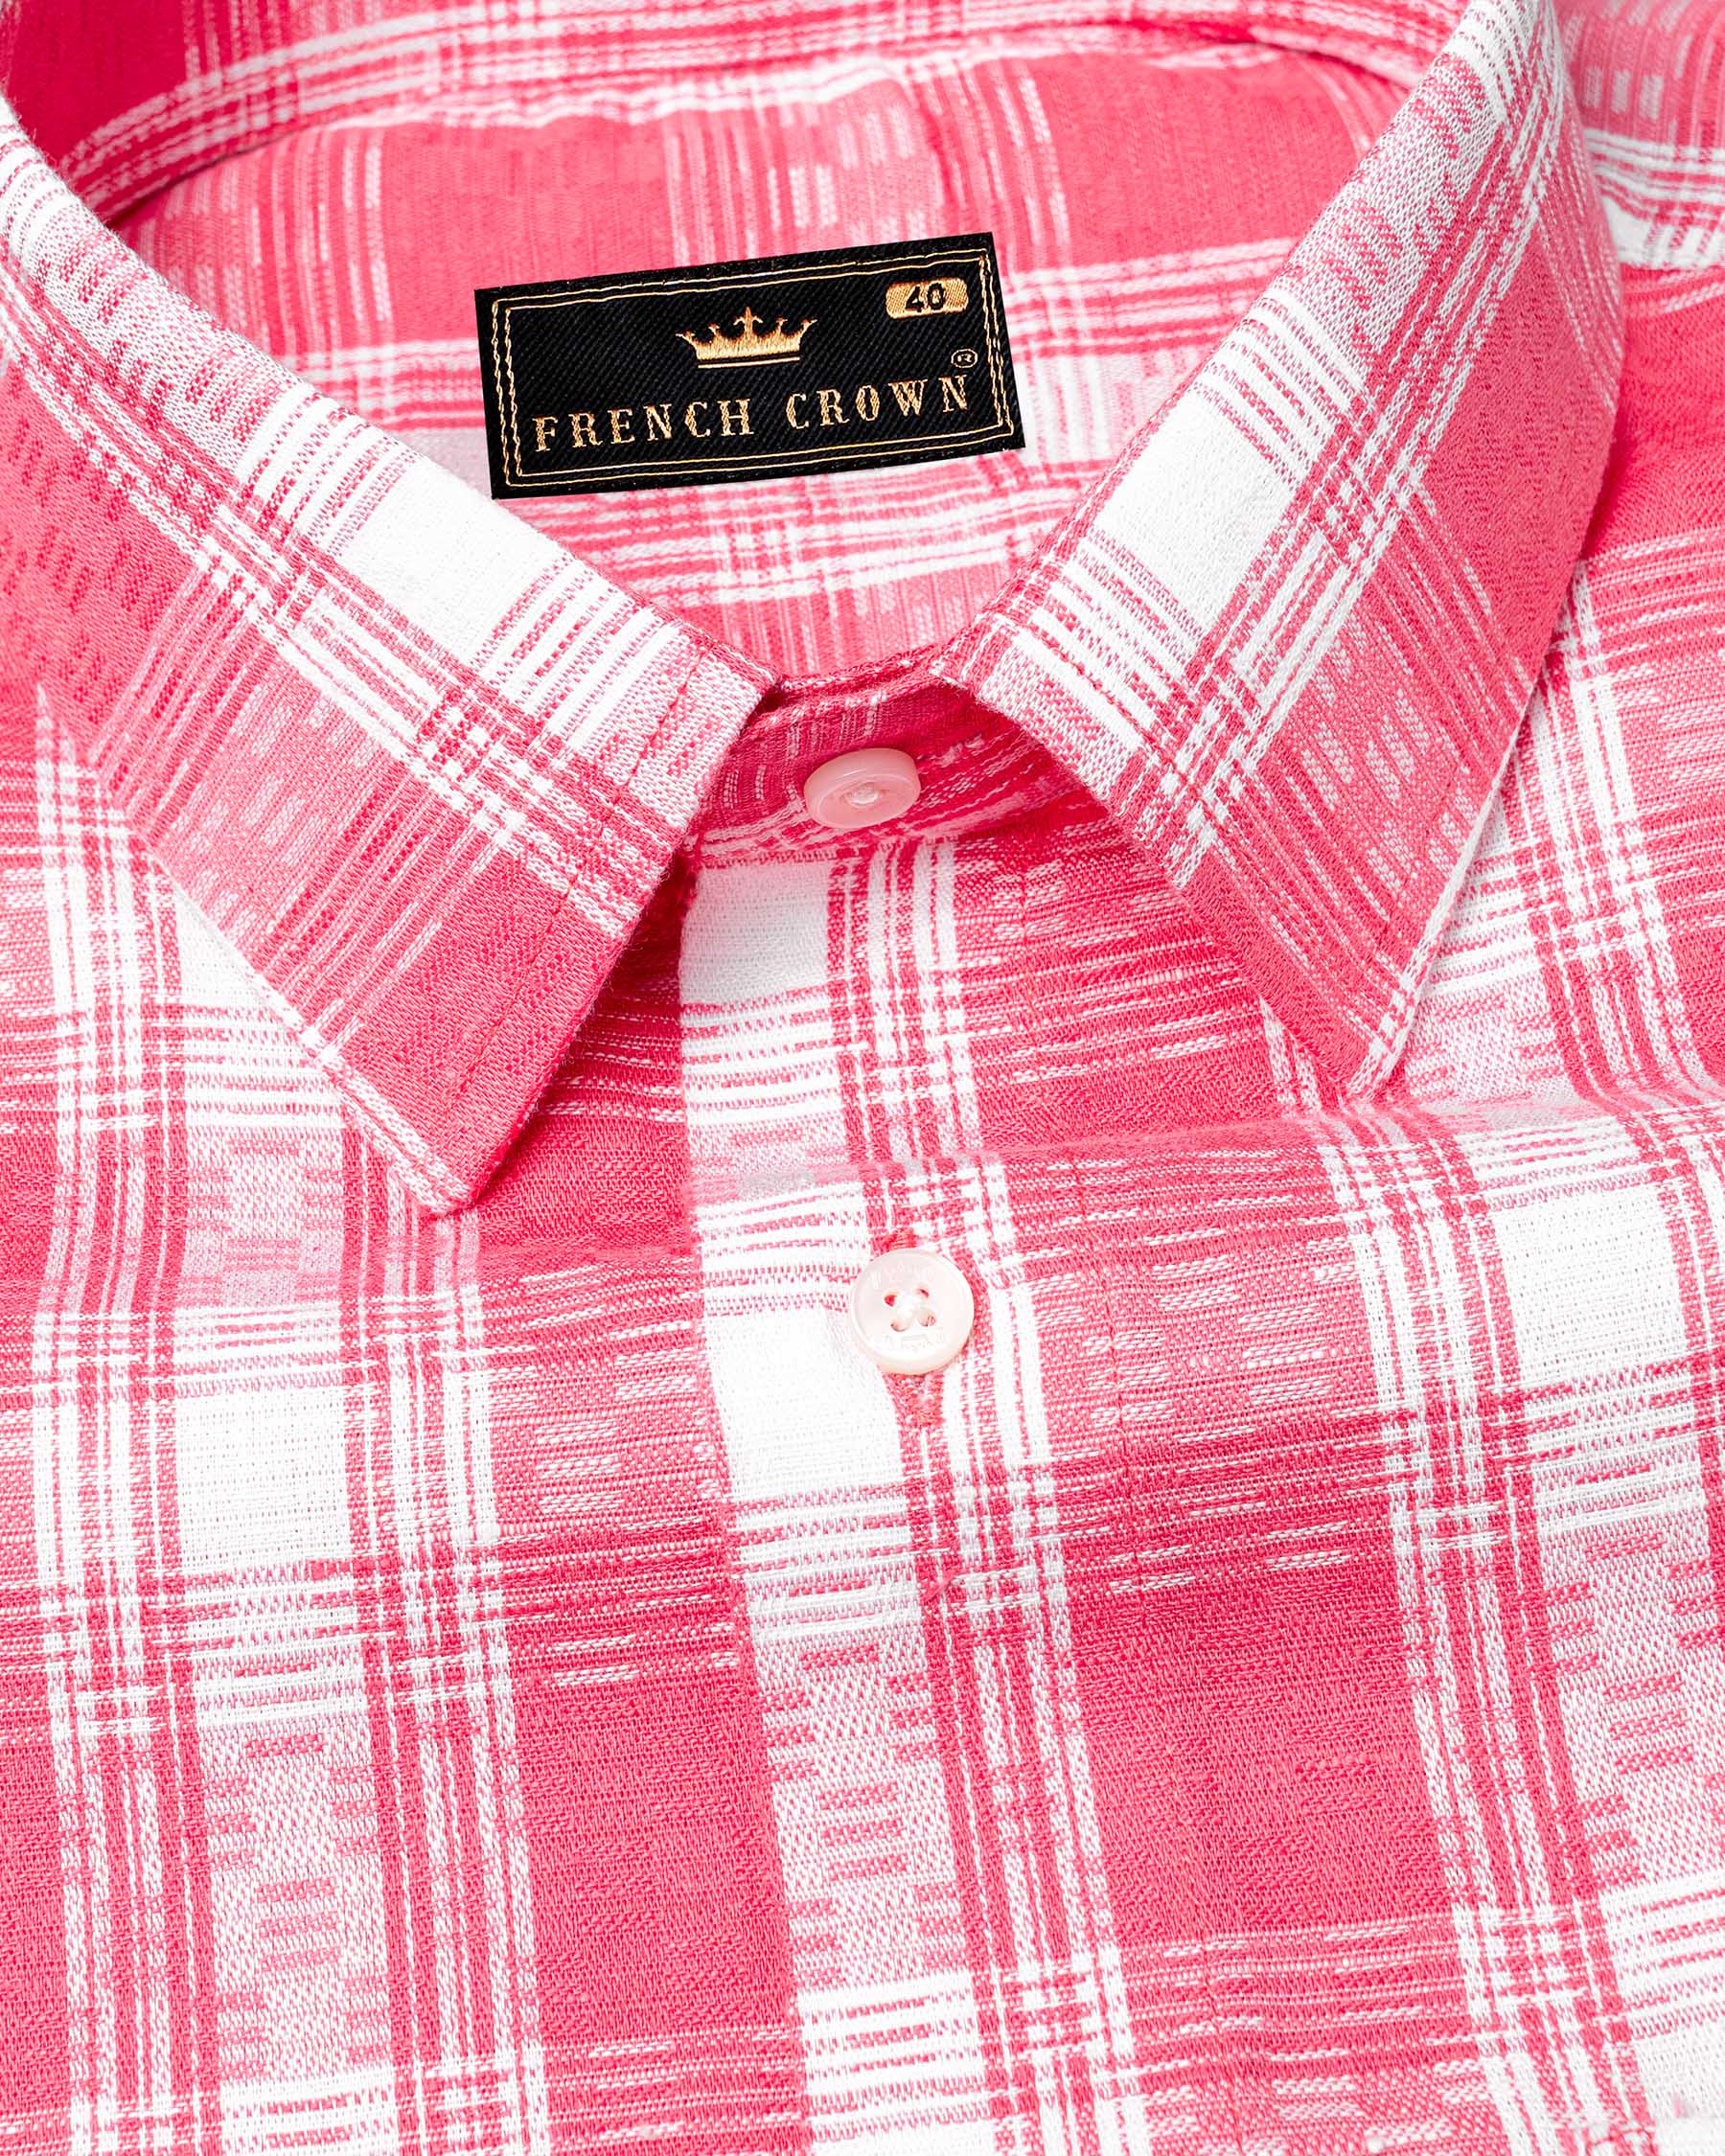 Mandy Pink and Bright White Checkered Twill Premium Cotton Shirt 6930-38,6930-38,6930-39,6930-39,6930-40,6930-40,6930-42,6930-42,6930-44,6930-44,6930-46,6930-46,6930-48,6930-48,6930-50,6930-50,6930-52,6930-52